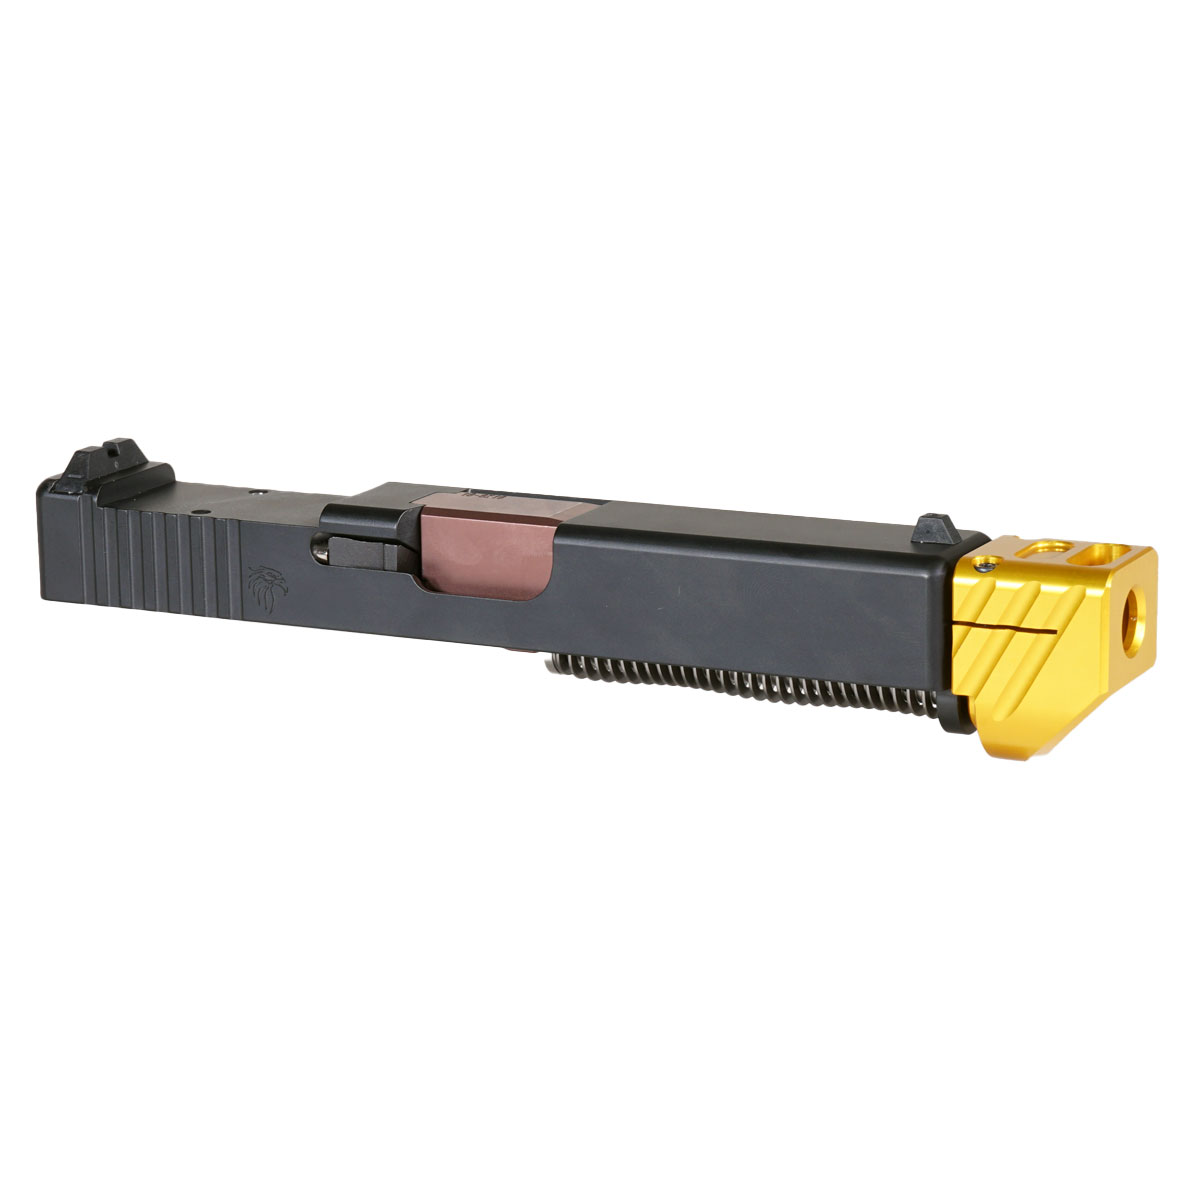 DDS 'Blockbuster V2 w/ Gold Compensator' 9mm Complete Slide Kit - Glock 19 Gen 1-3 Compatible